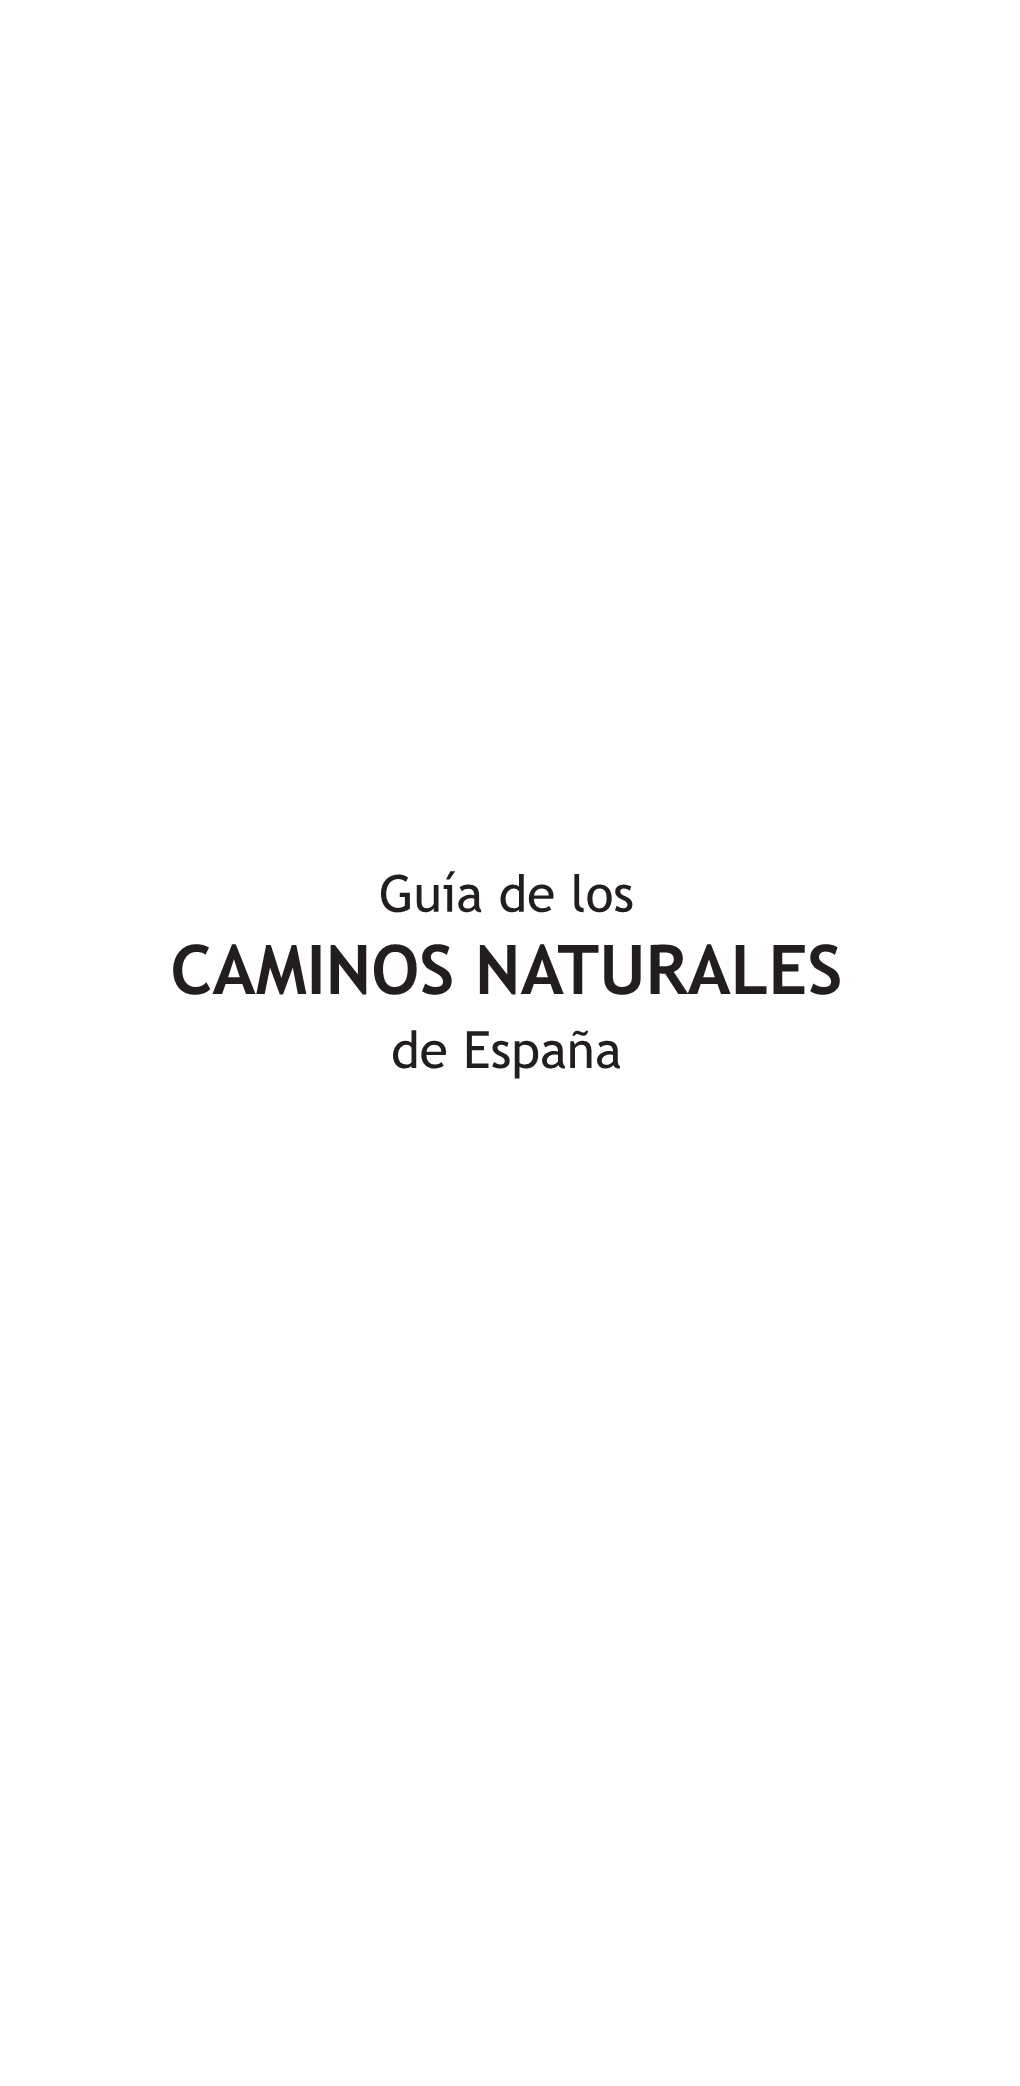 CAMINOS NATURALES De España Duero ETAPA 0B Indice Rev Índice 14/01/12 17:12 Página 2